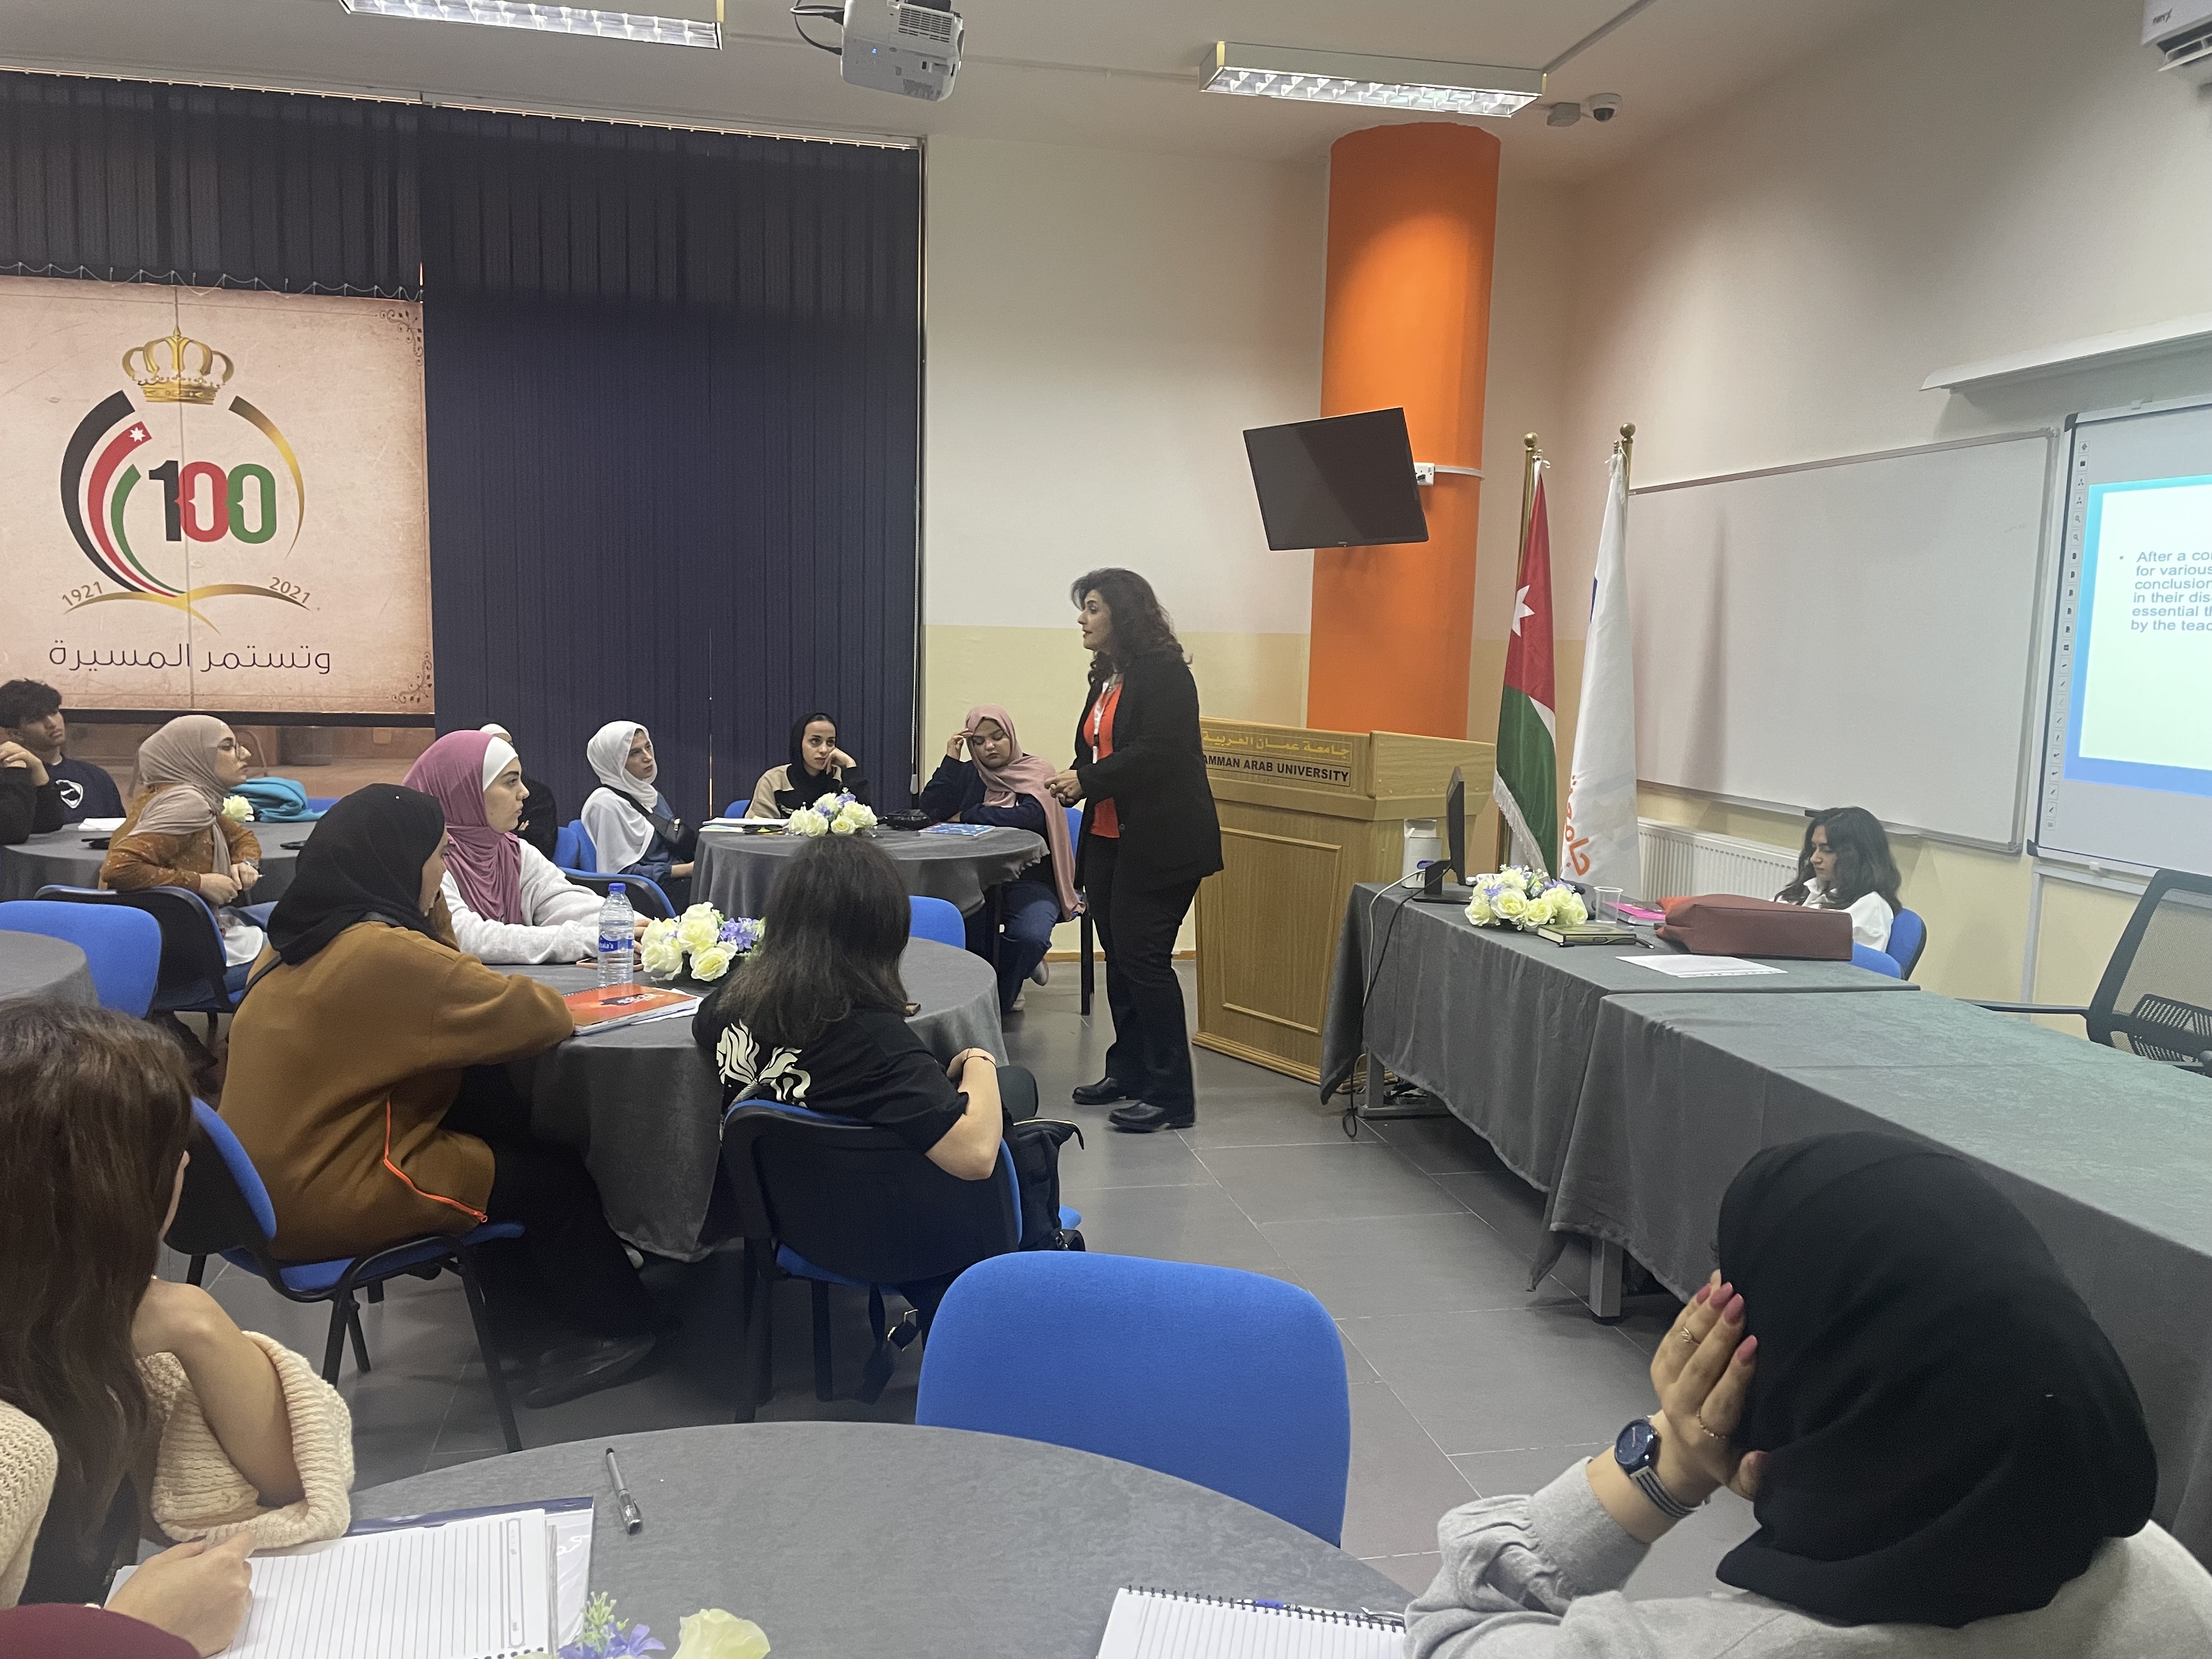 ورشة "المحادثة باللغة الإنجليزية" لطلبة عمان العربية1